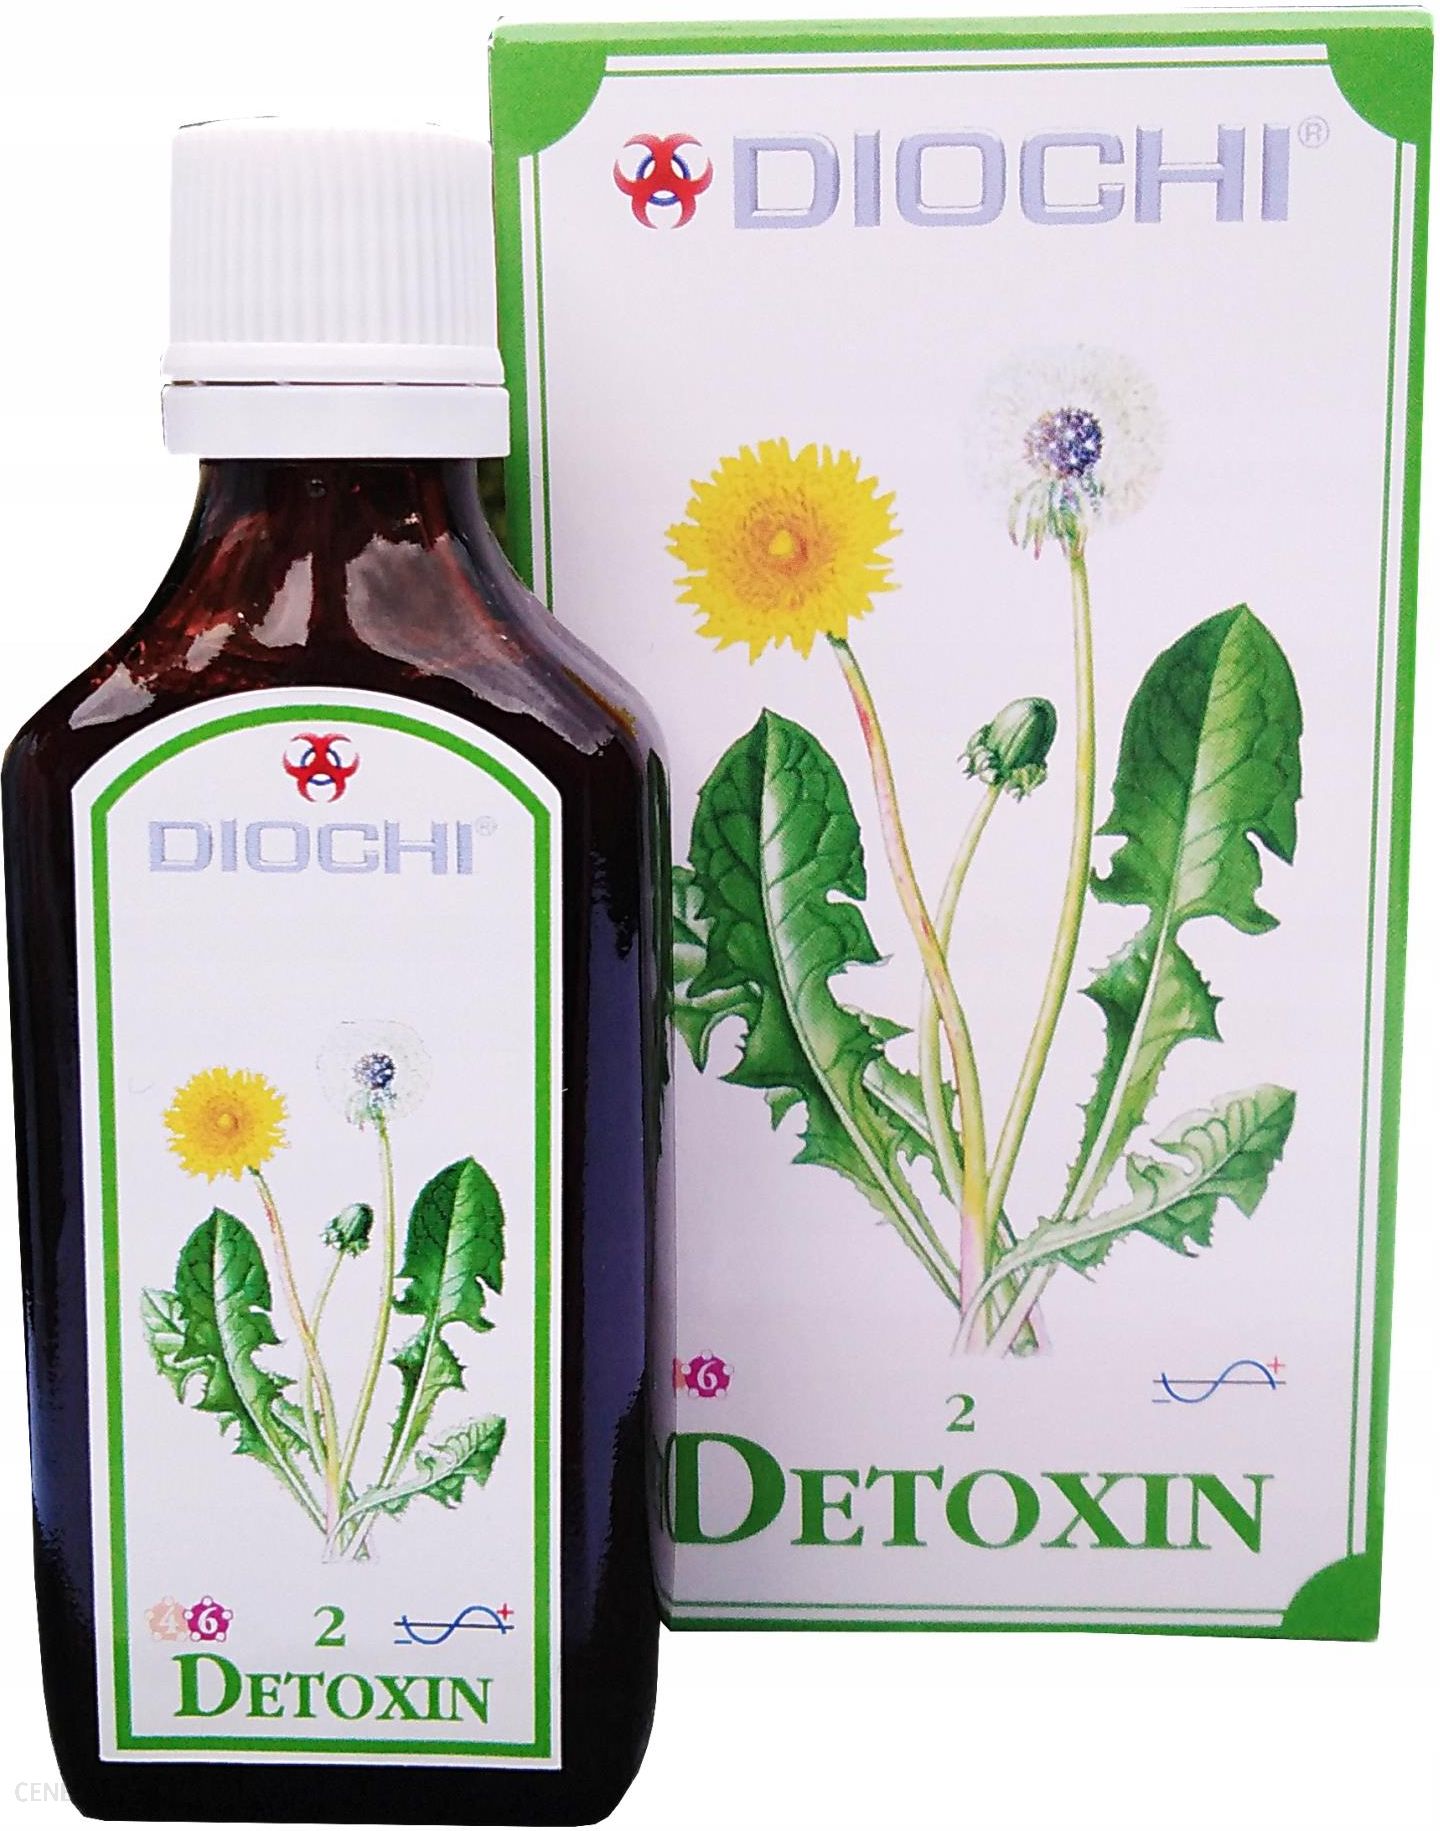 Diochi Detoxin